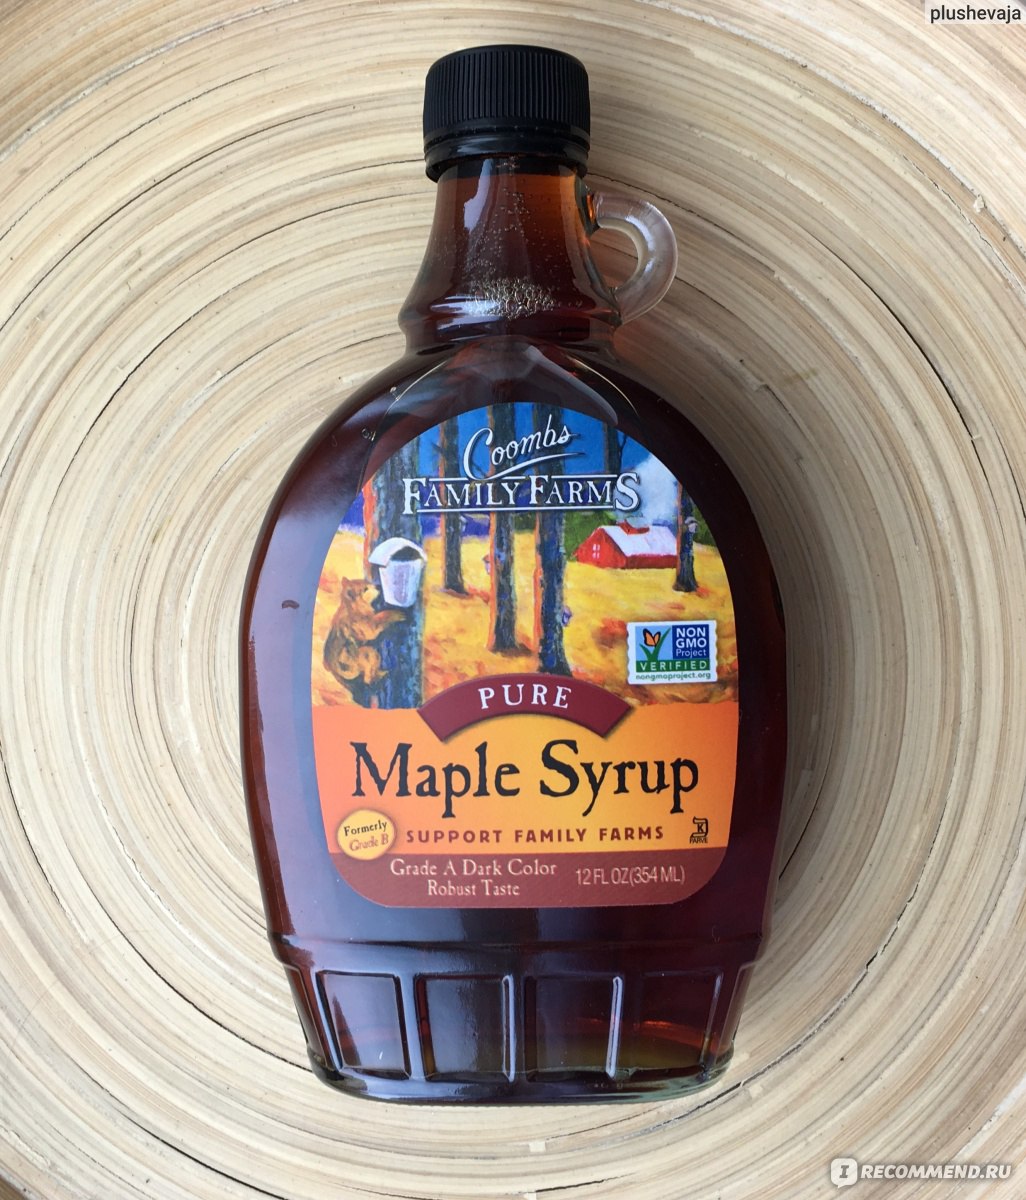 Сироп Coombs Family Farms Pure Maple Syrup (Grade B) фото.